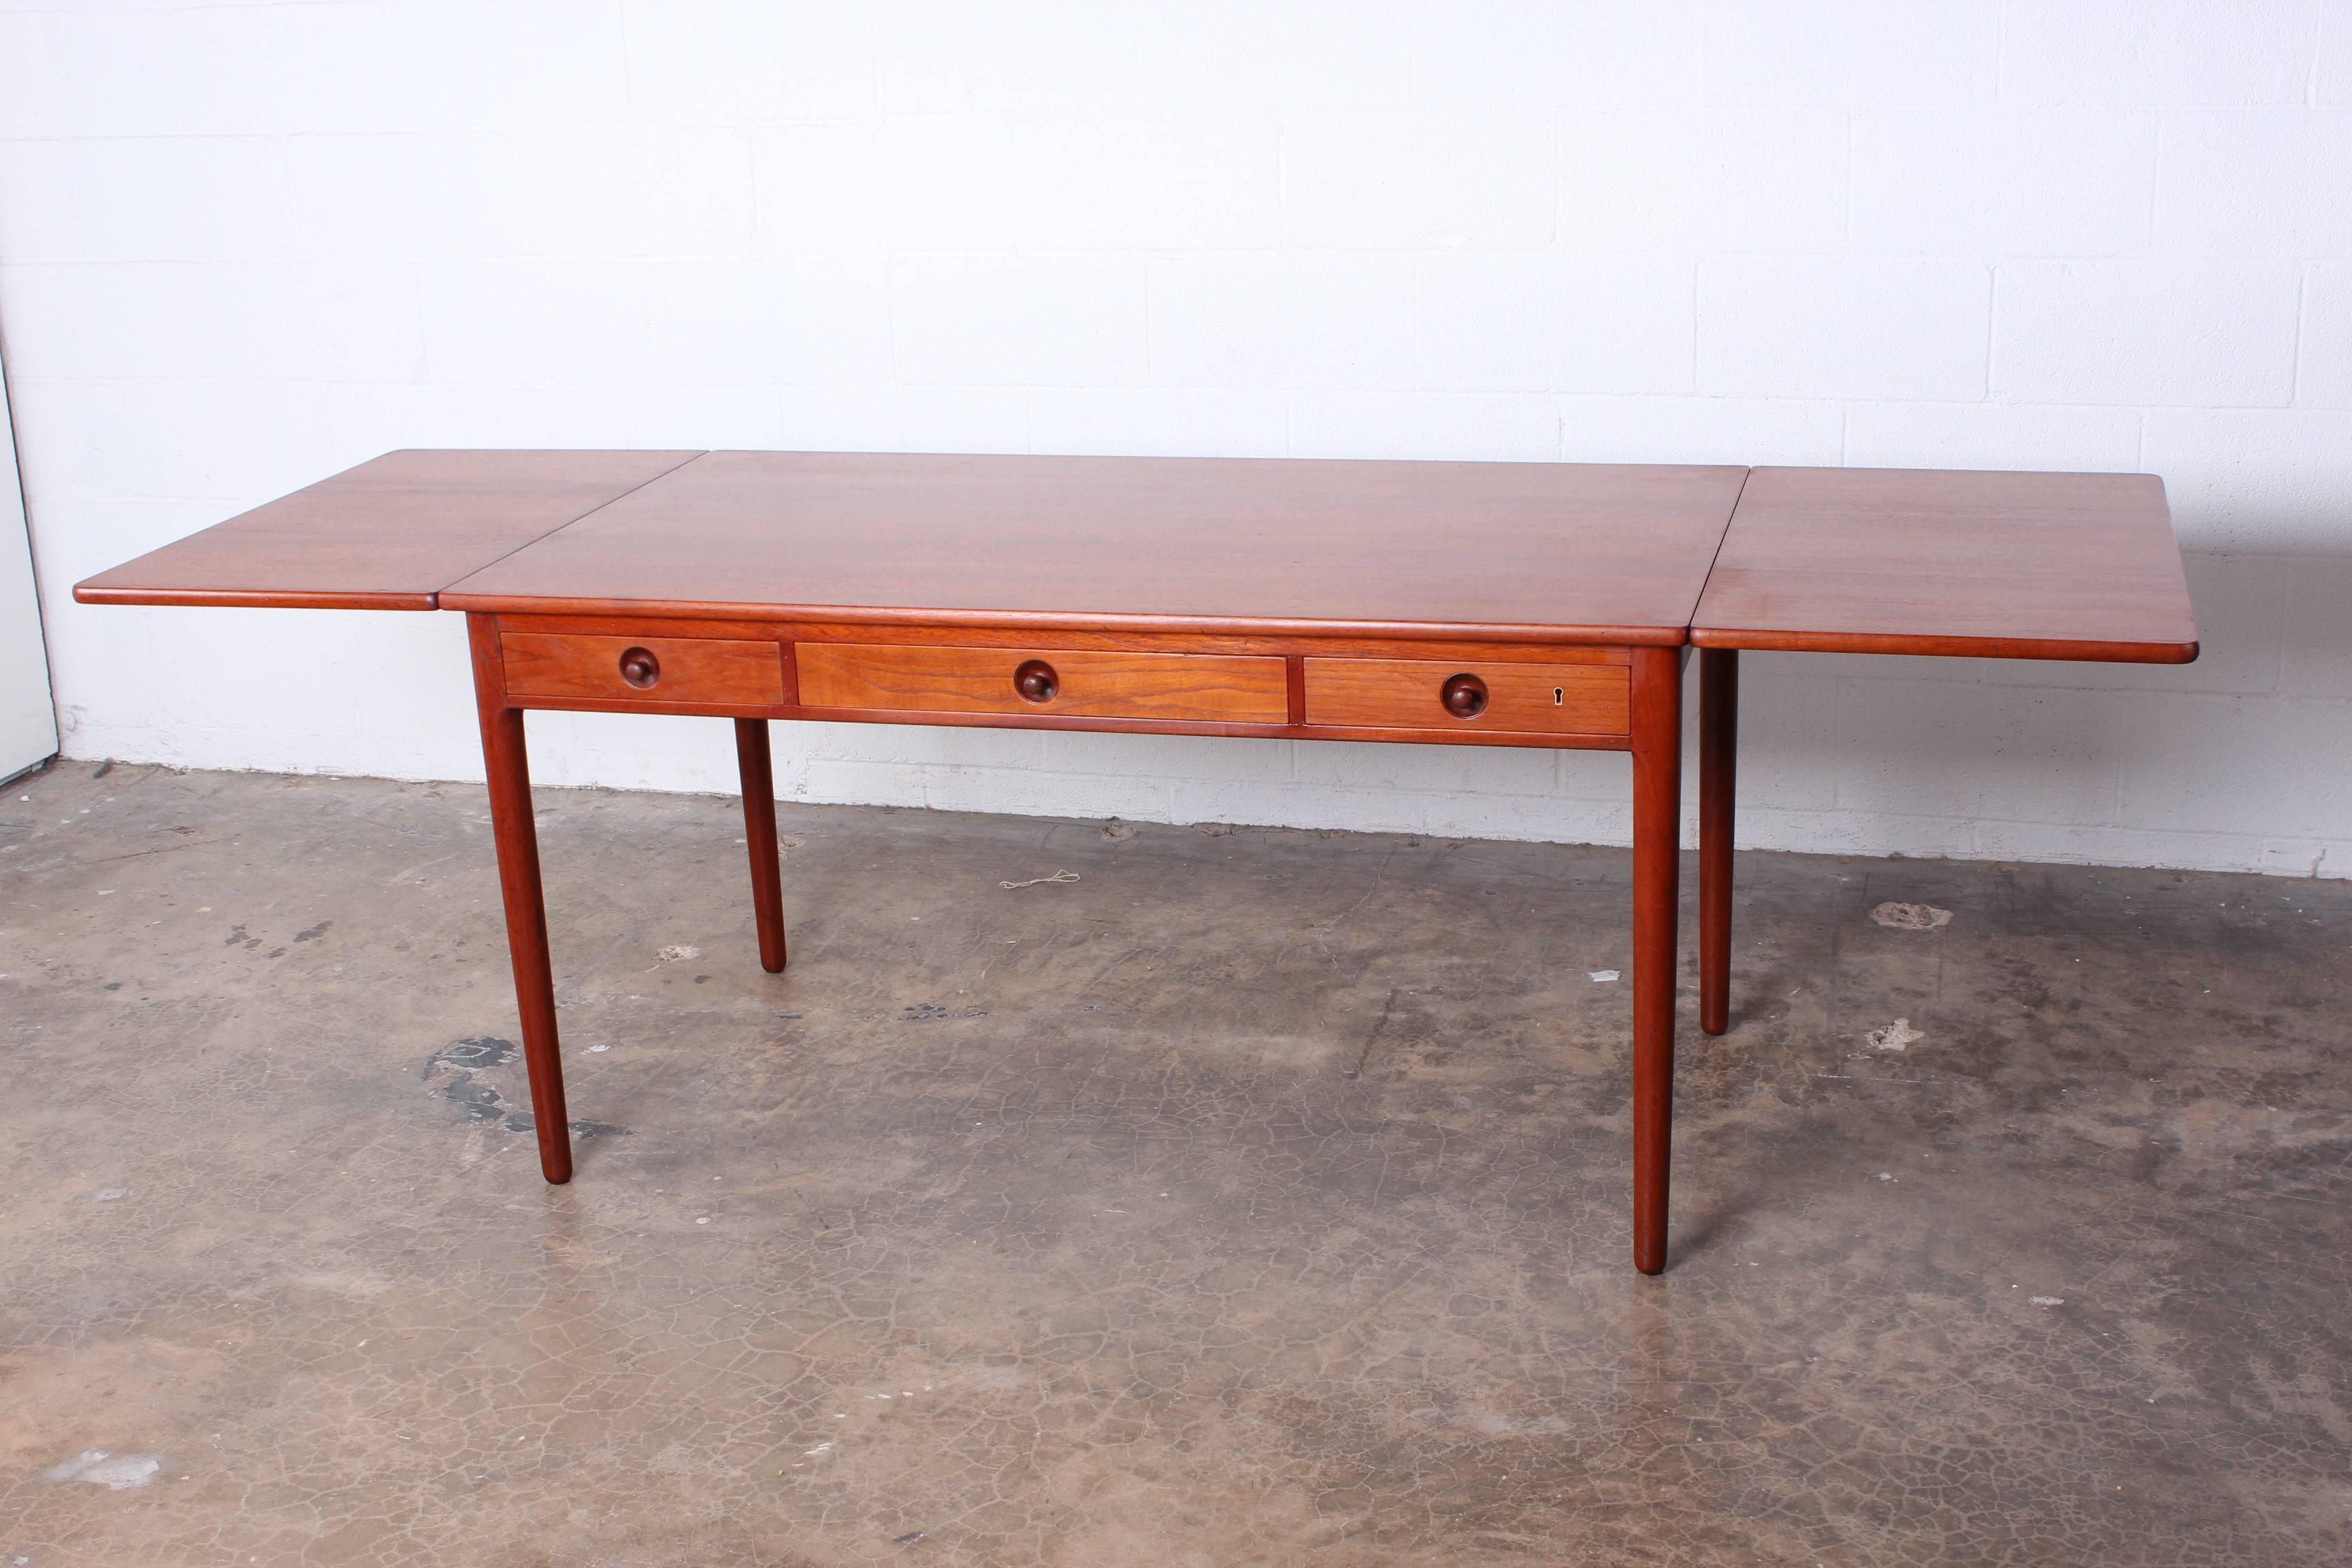 A teak drop-leaf table or desk AT305 designed by Hans Wegner. 
Measure: 91